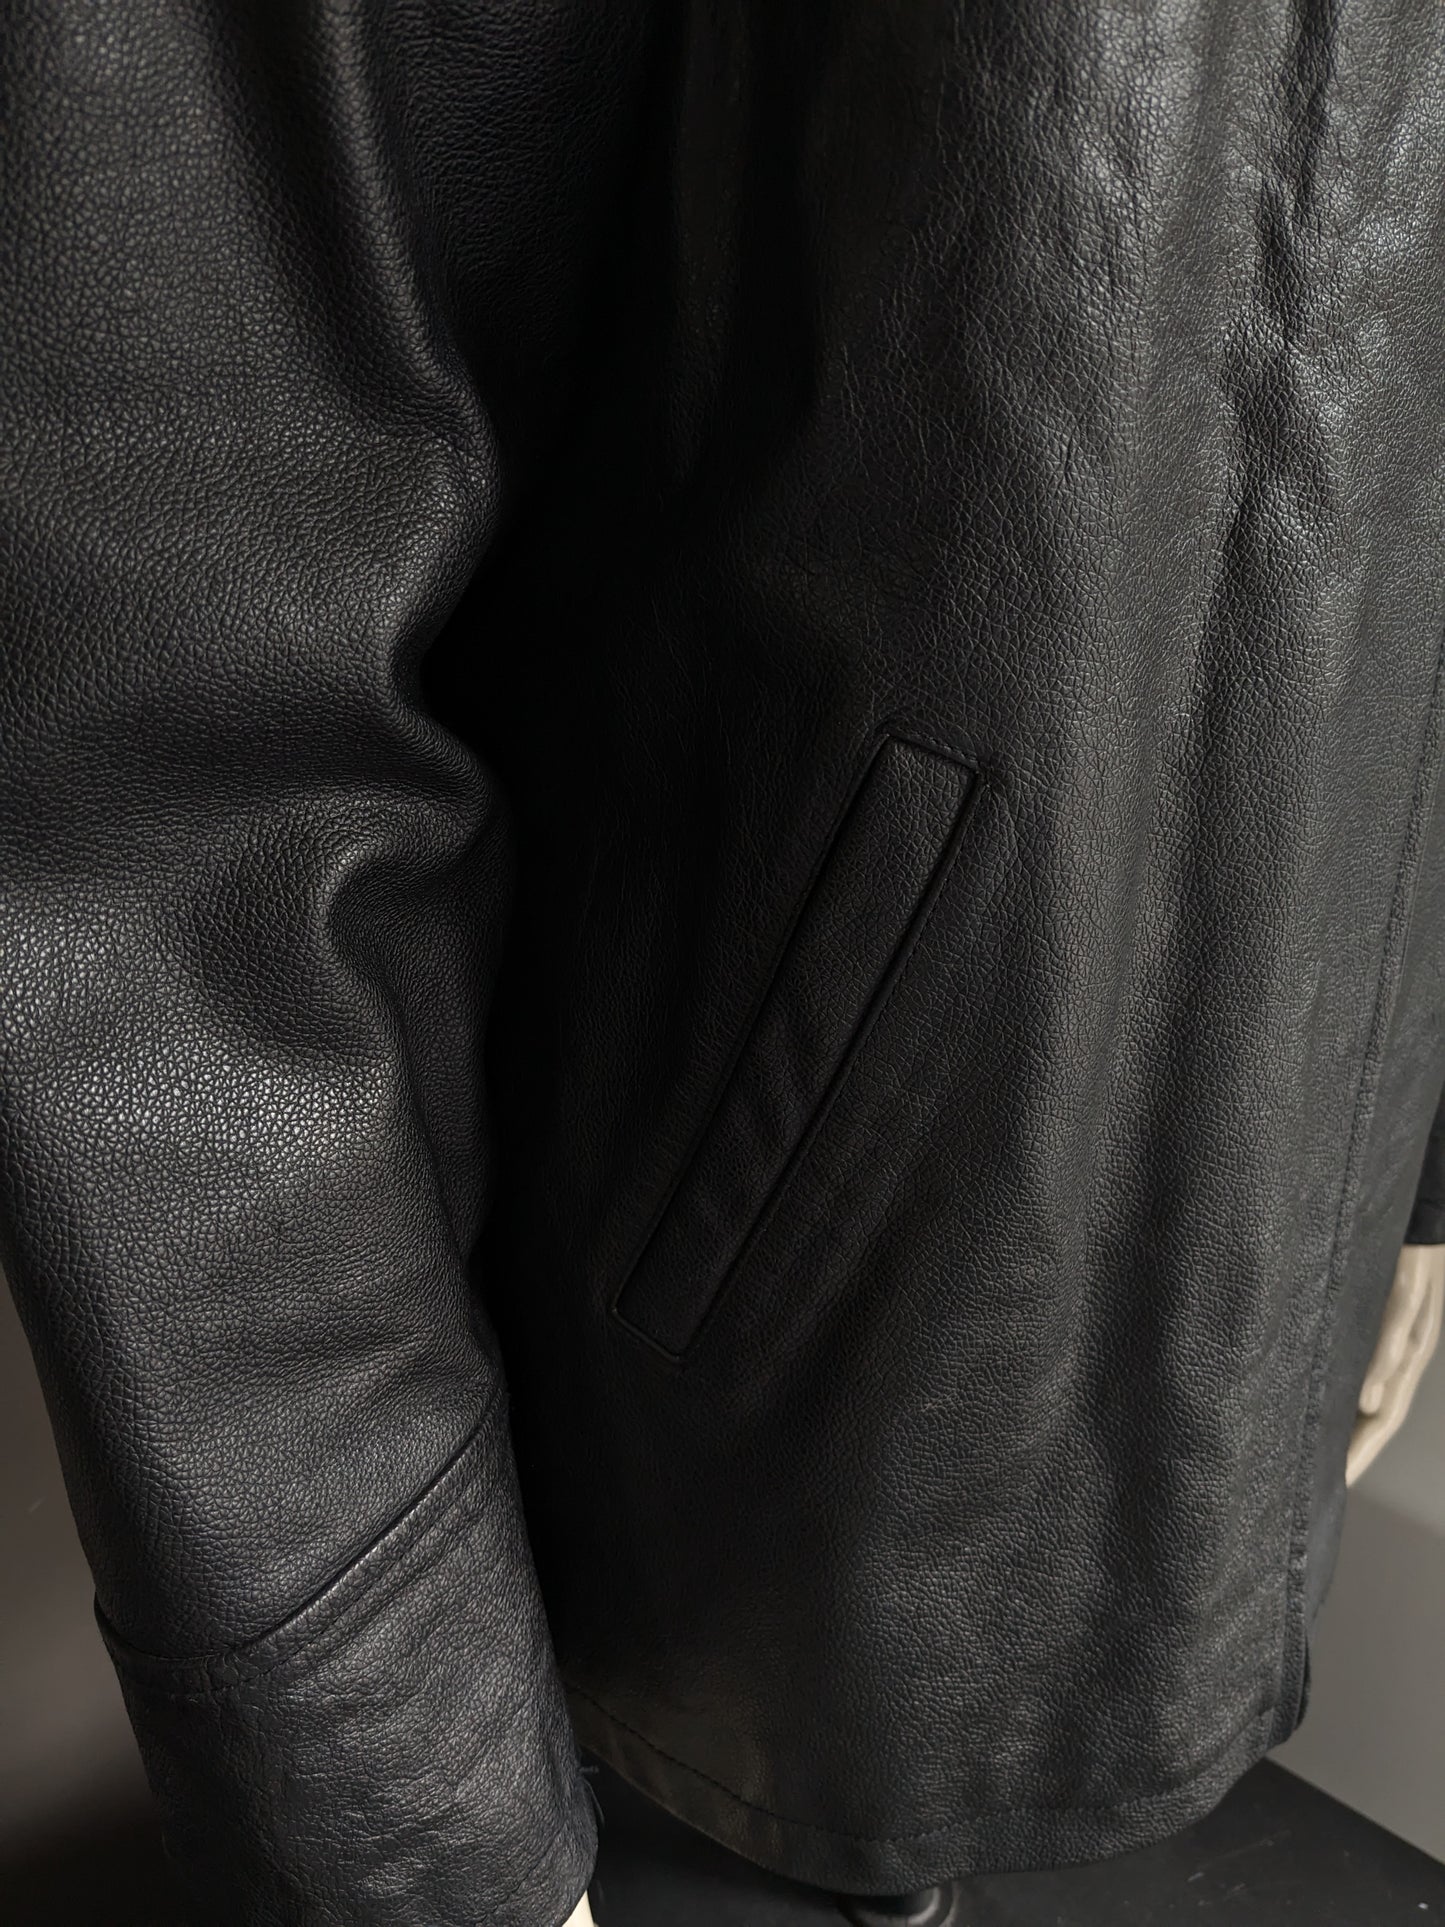 Giacca / giacca in pelle di rivoluzione. Colorato nero. Taglia L.